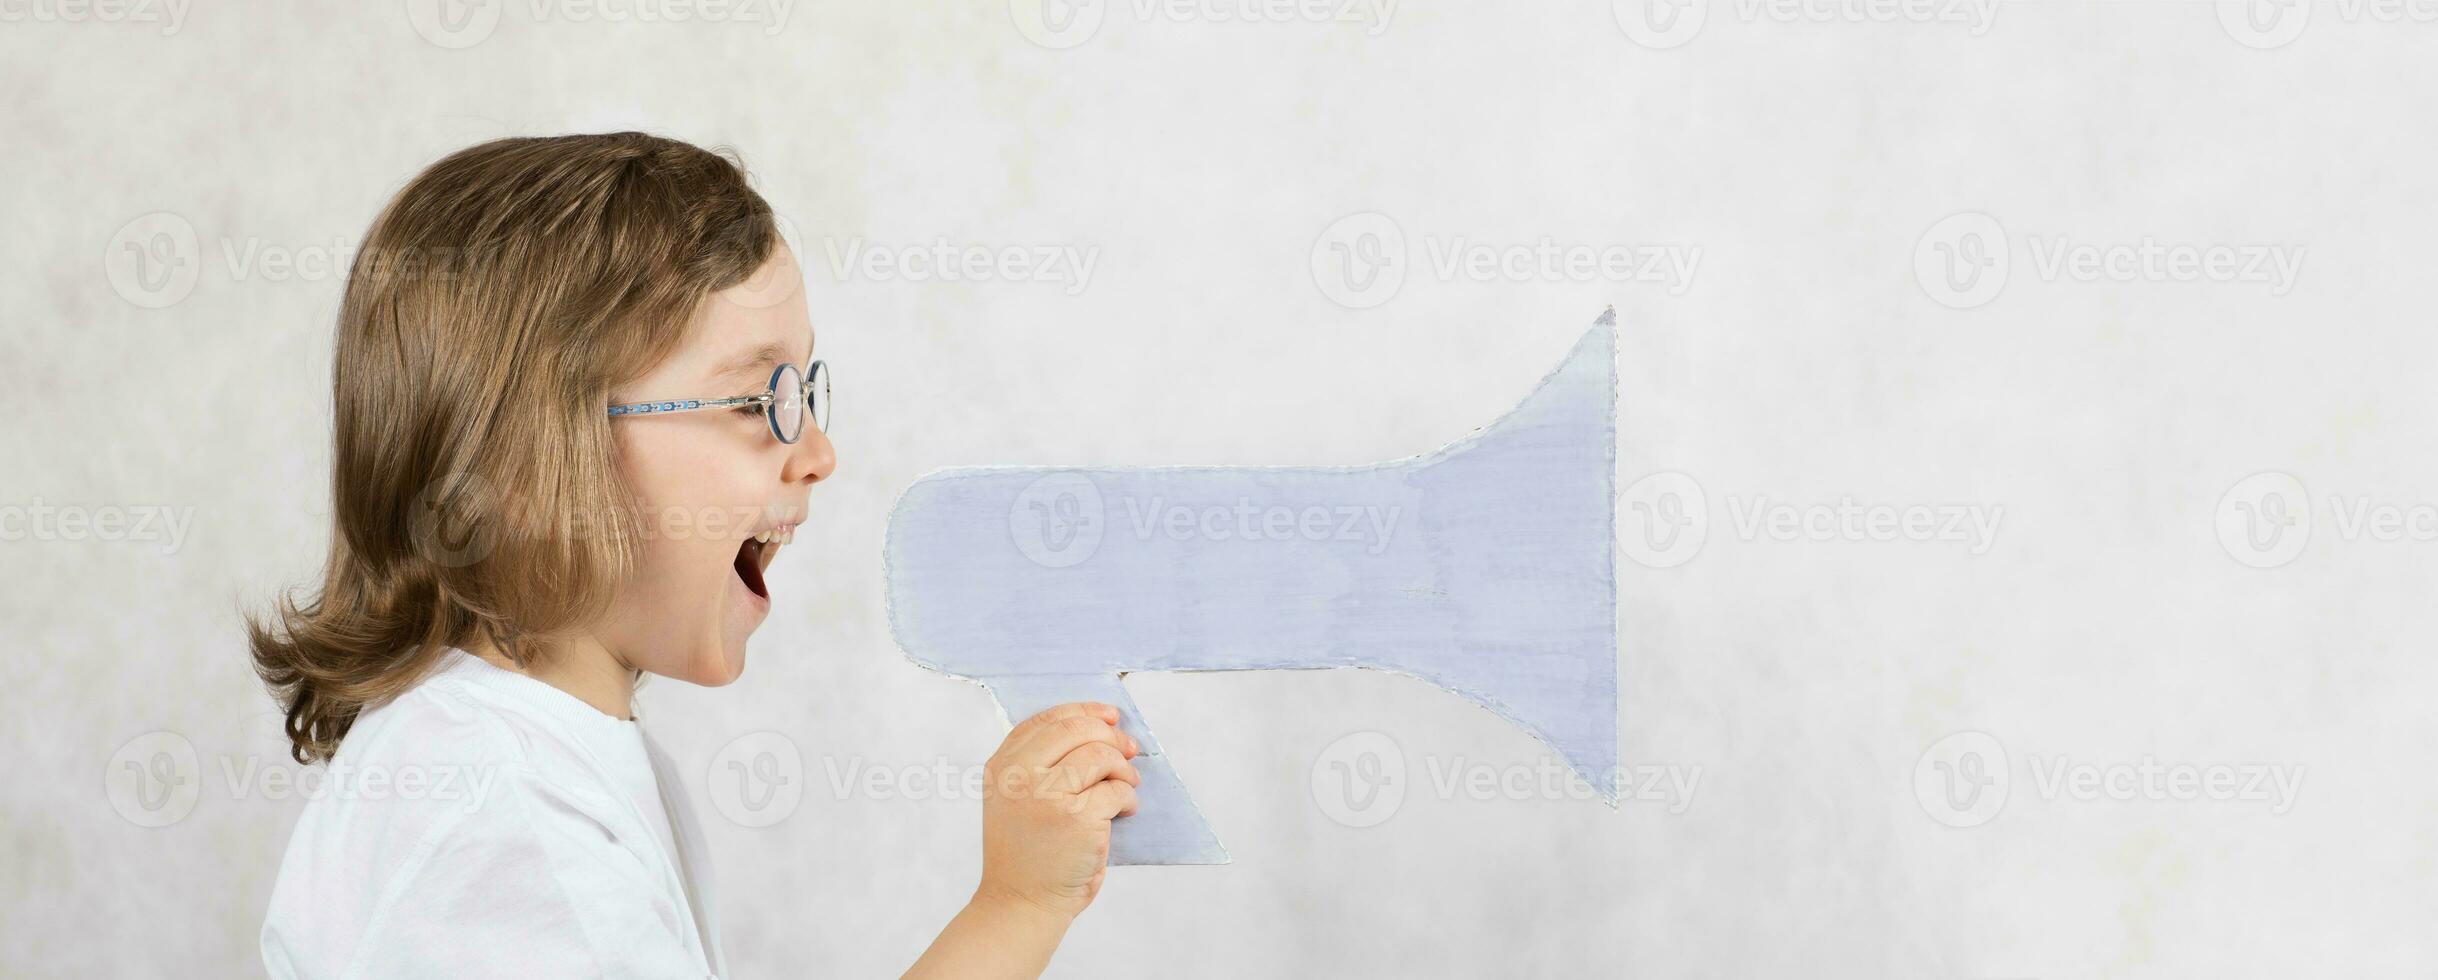 chico de cinco años es anunciando alguna cosa a altoparlante. foto